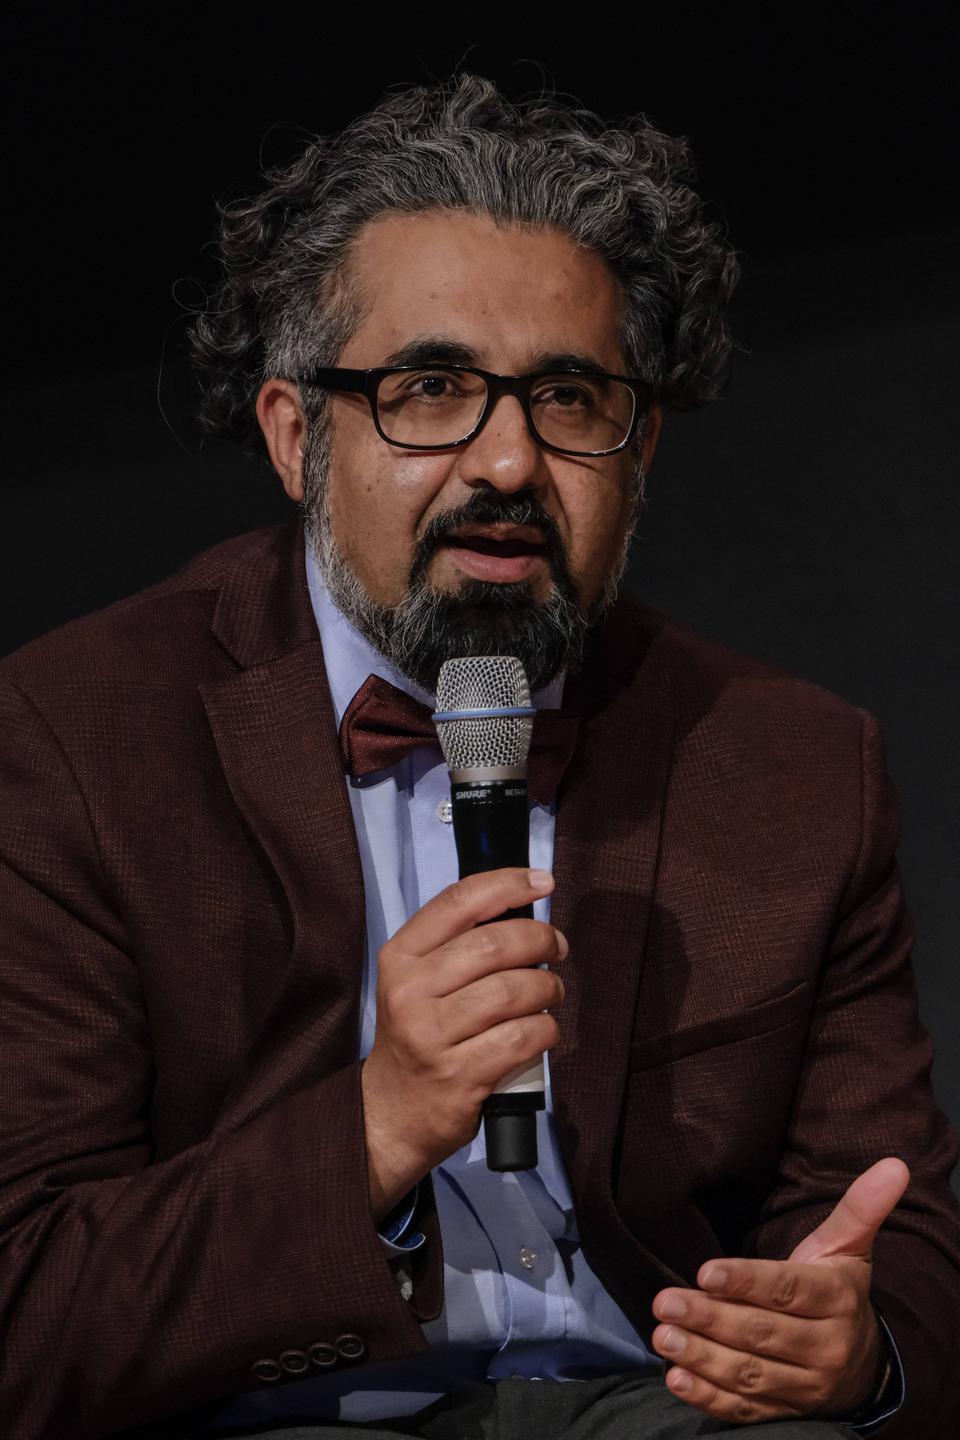 Der Islamwissenschaftler Ahmad Milad Karimi trägt ein rotbraunes Sakko und eine gleichfarbige Fliege und spricht in ein Mikrofon, das er in der rechten Hand hält.